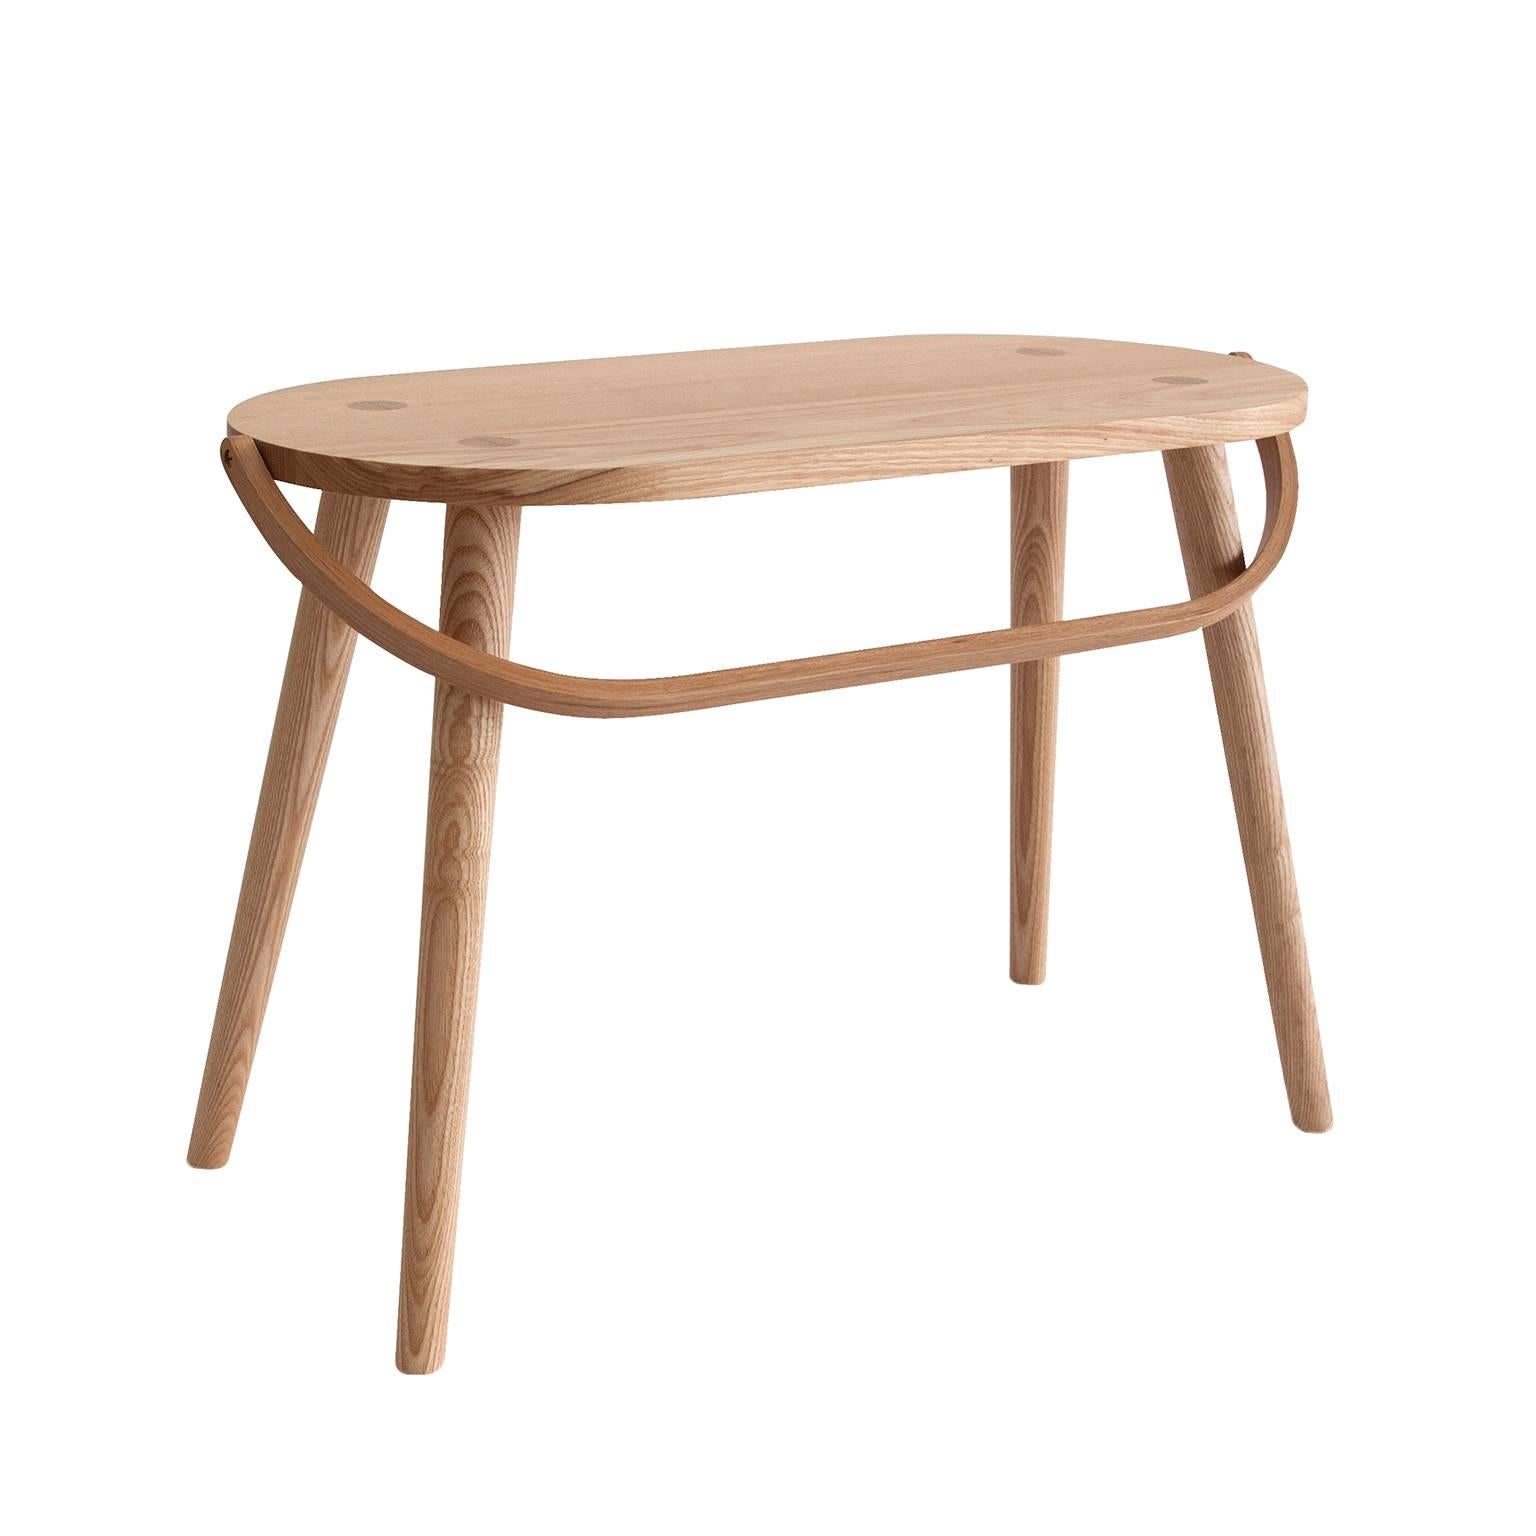 Le tabouret double seau est un siège simple généreux ou une table d'appoint. La troisième des quatre versions de la collection Bucket Stool, une famille de meubles en frêne massif dotés de poignées en bois courbé. Ces pièces polyvalentes peuvent